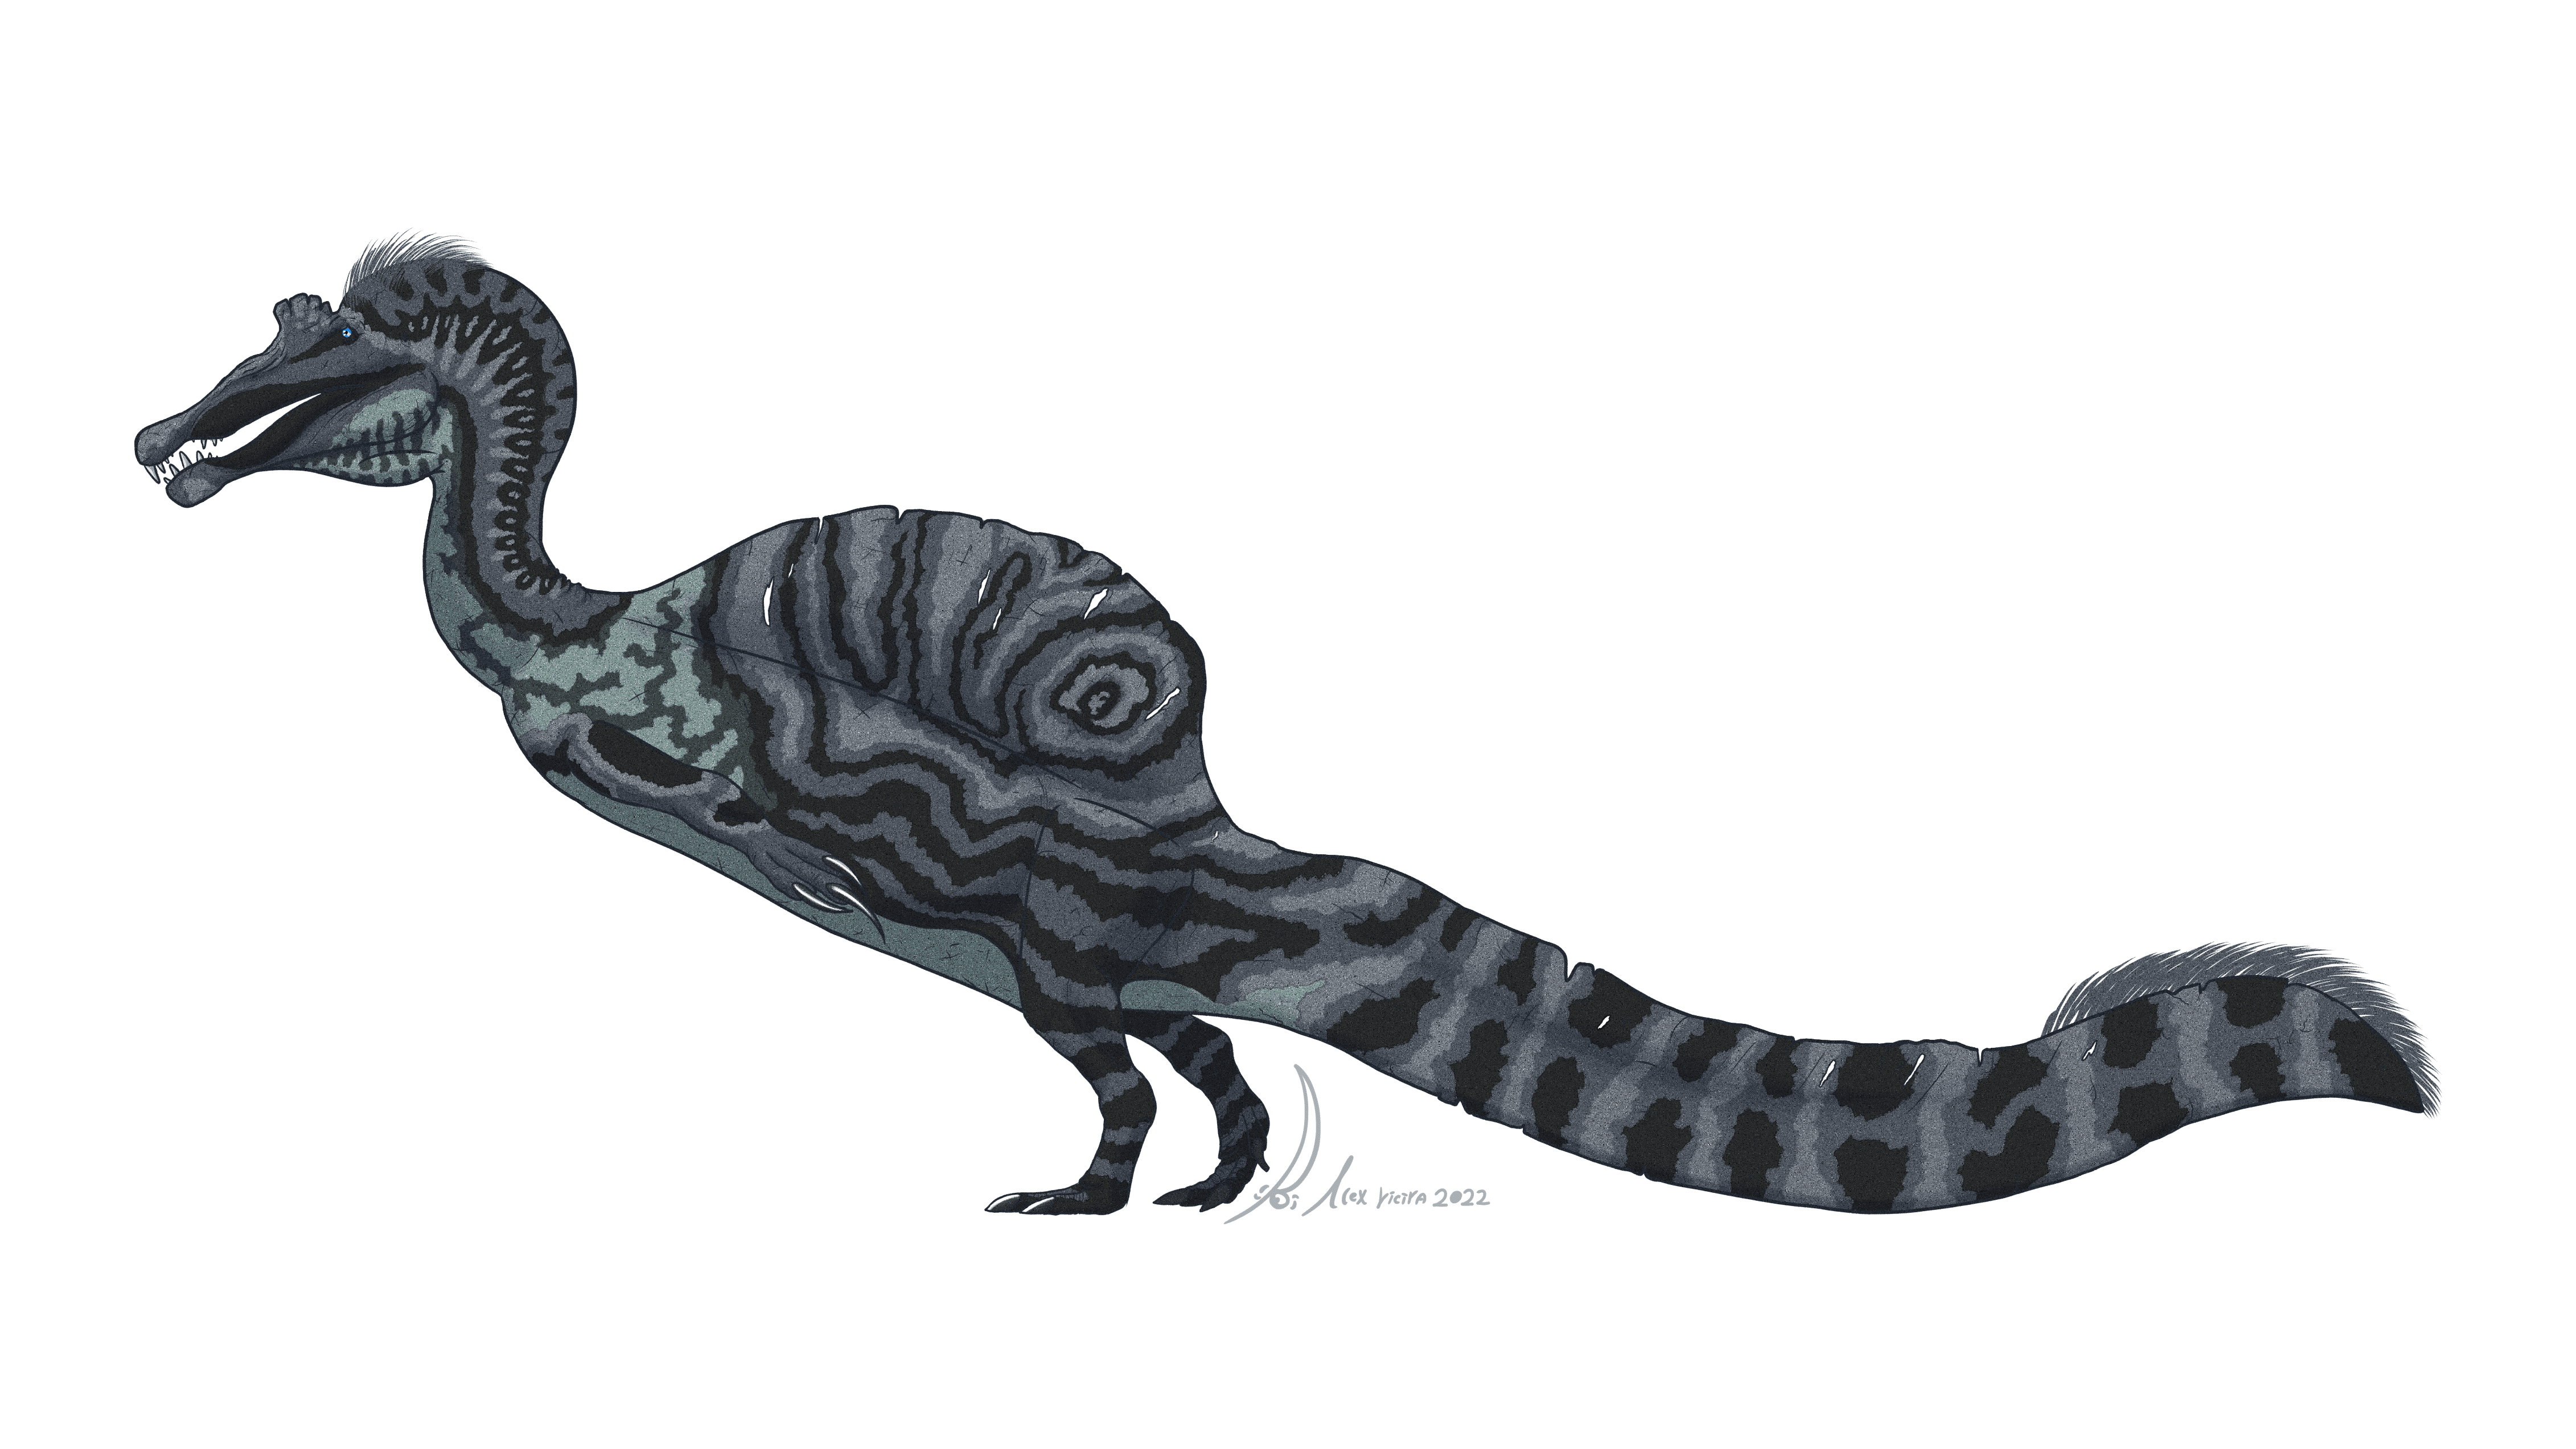 Sigilmassasaurus